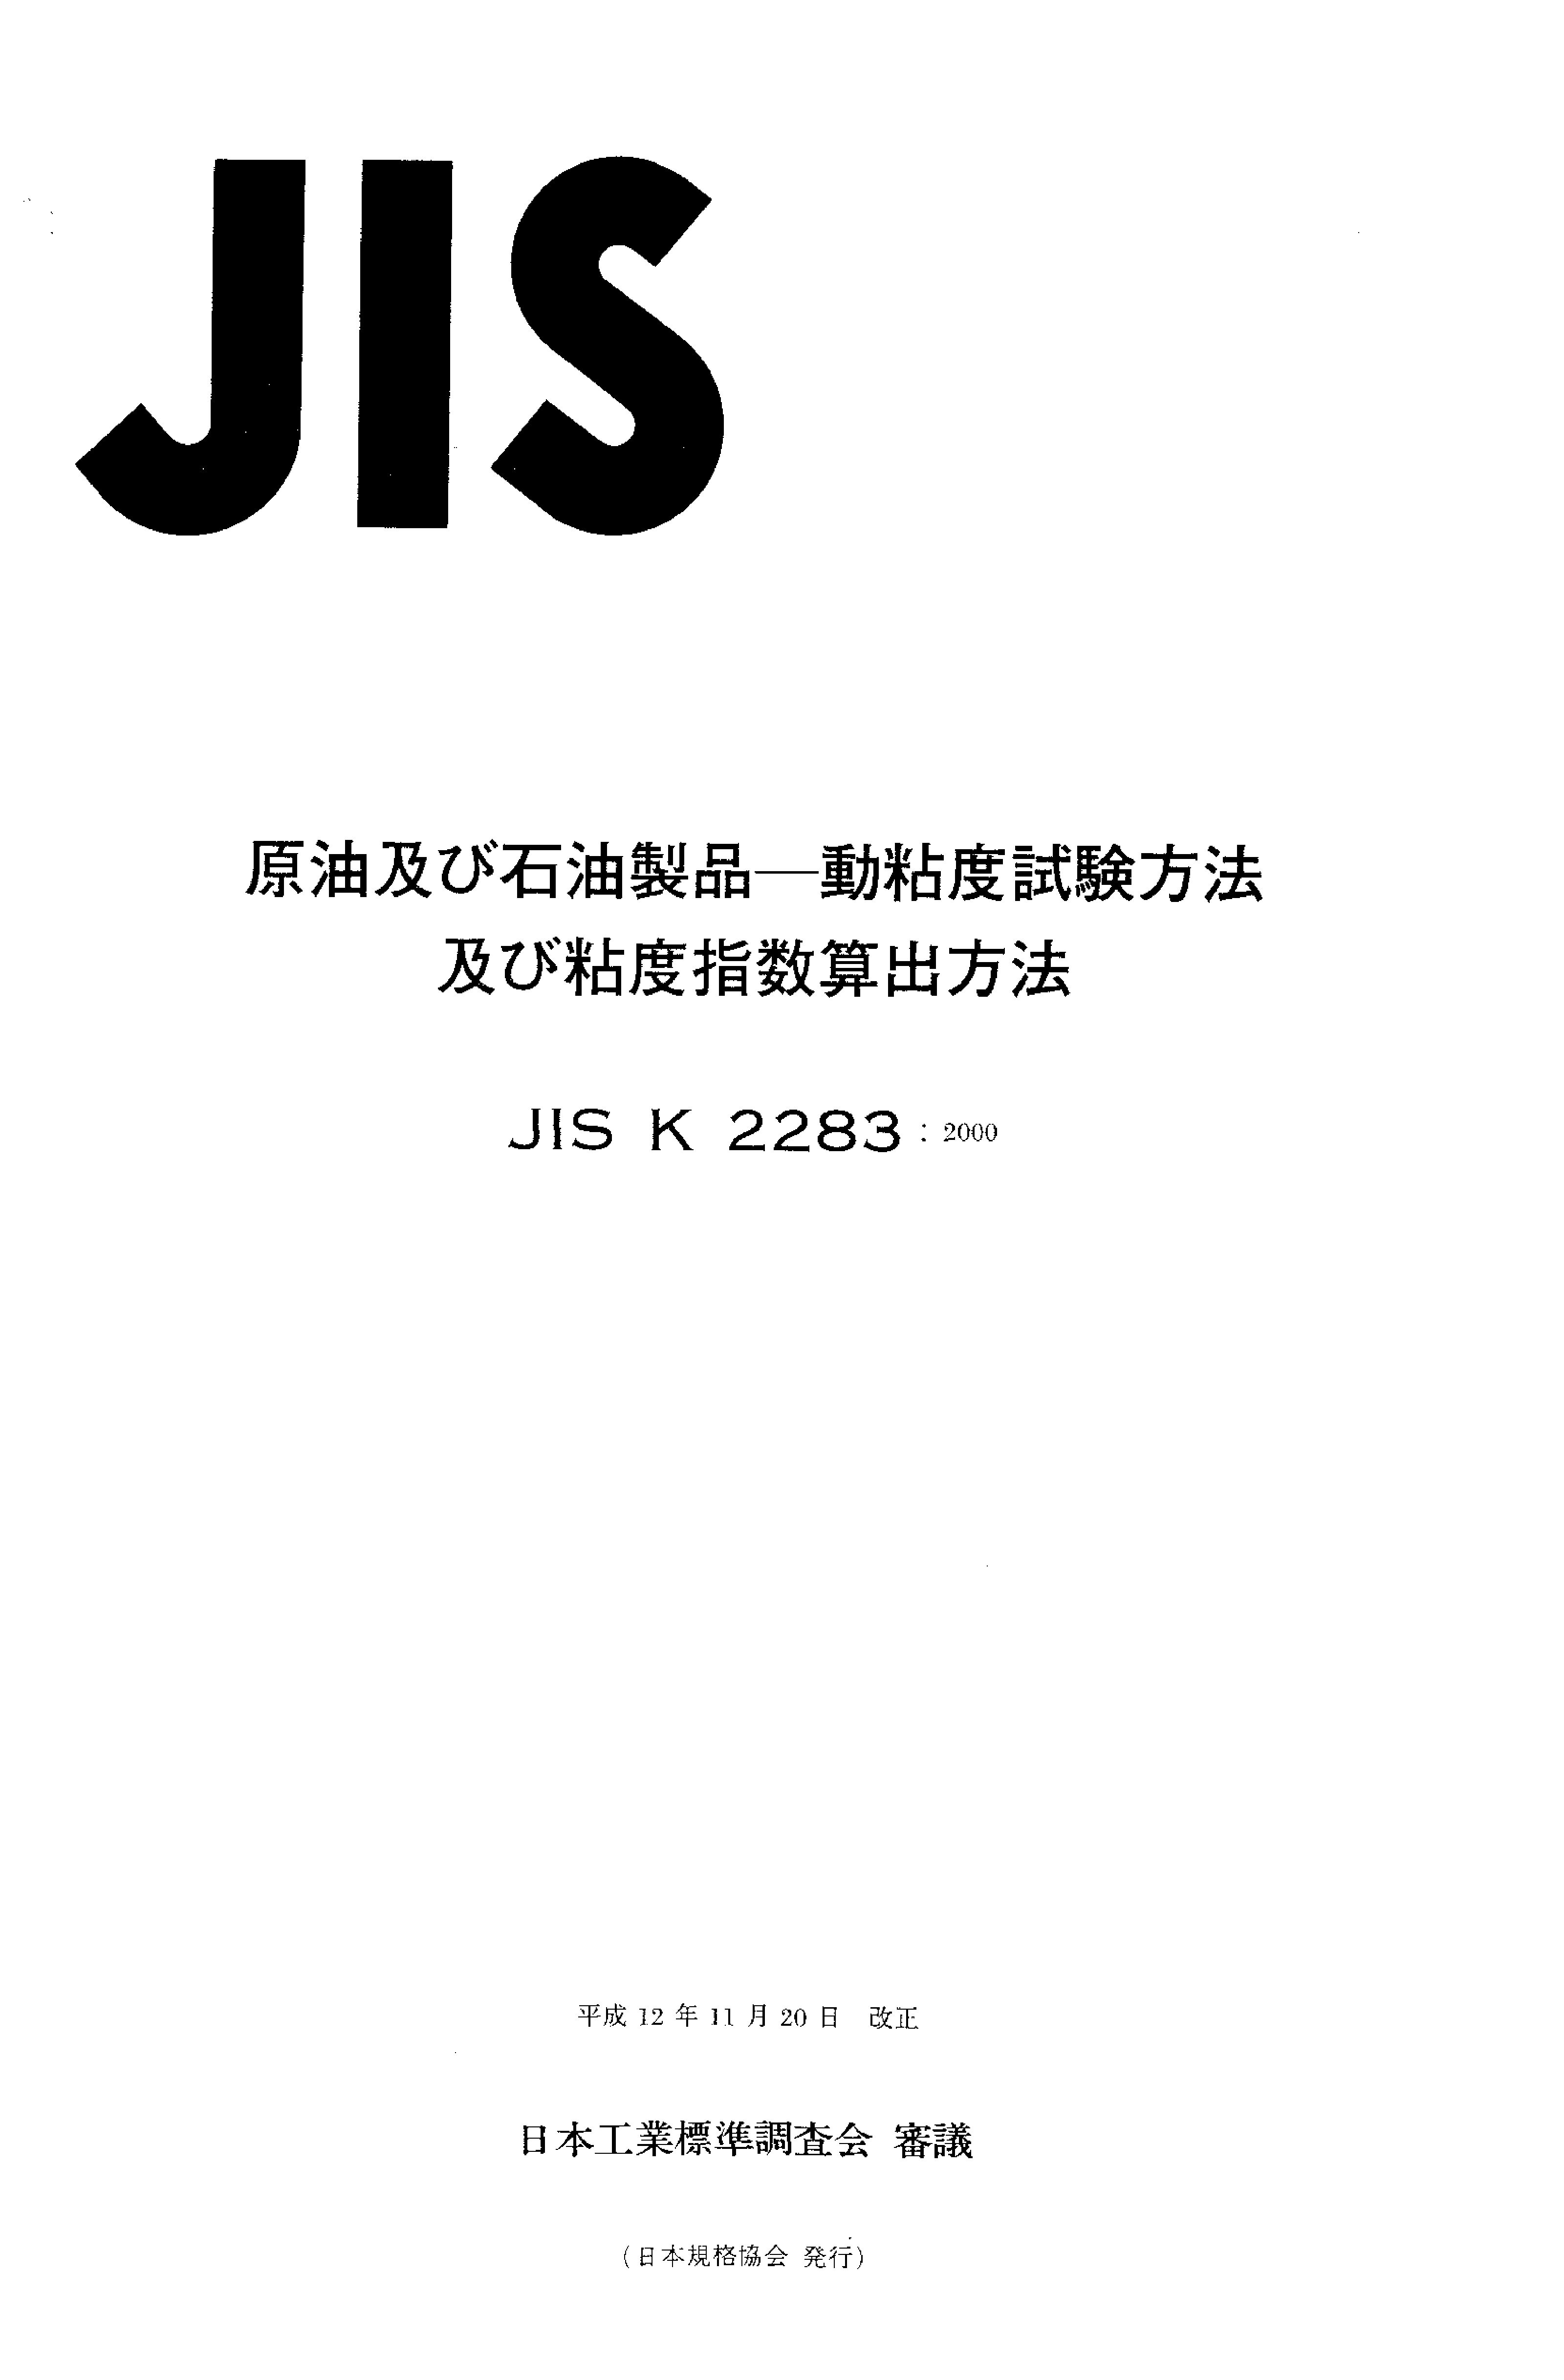 JIS K 2283:2000